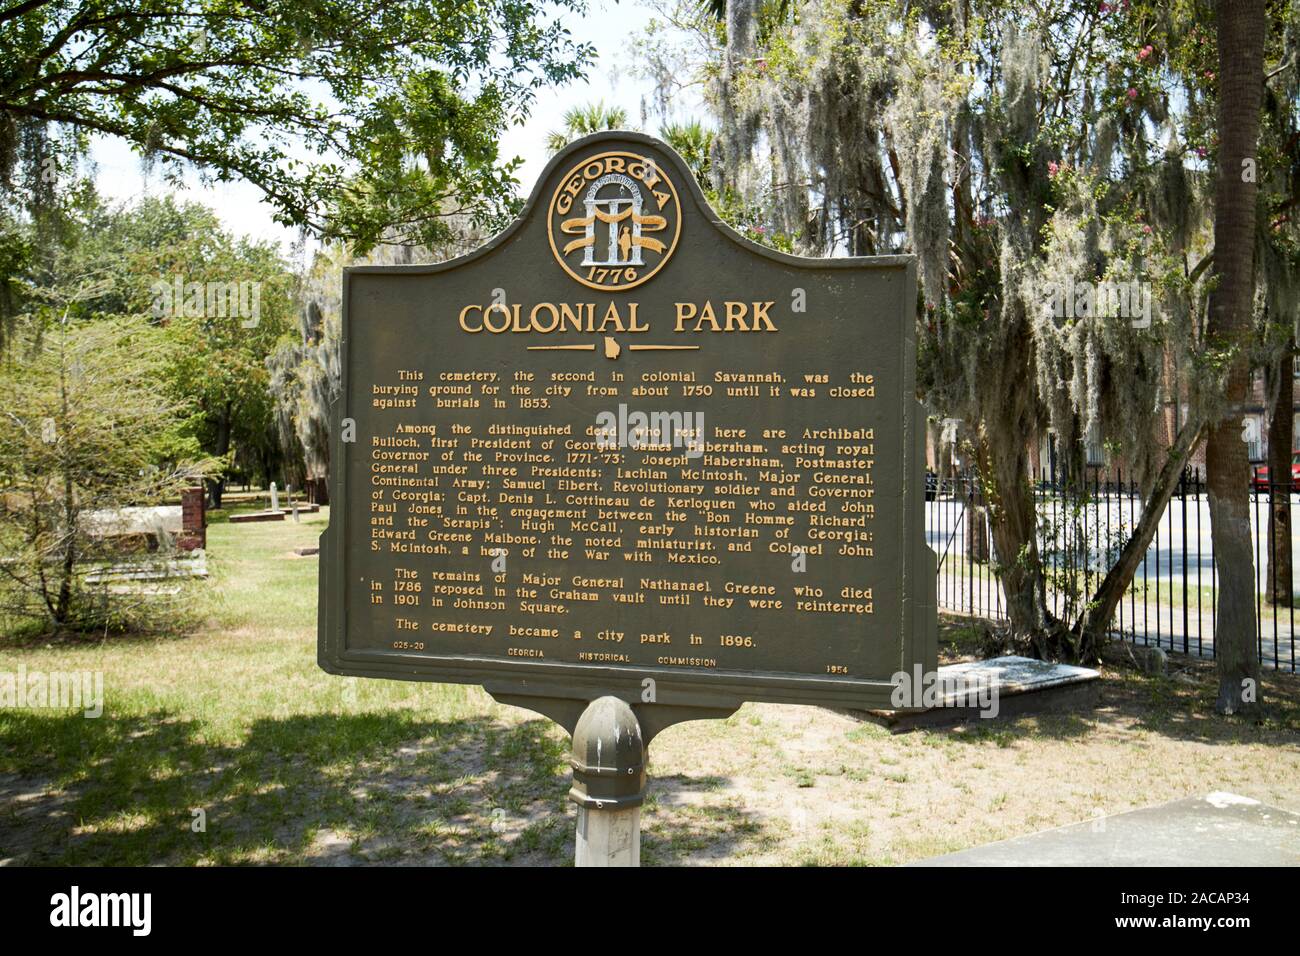 Marcatore storico all'ingresso coloniale cimitero parco Savannah in Georgia negli Stati Uniti Foto Stock